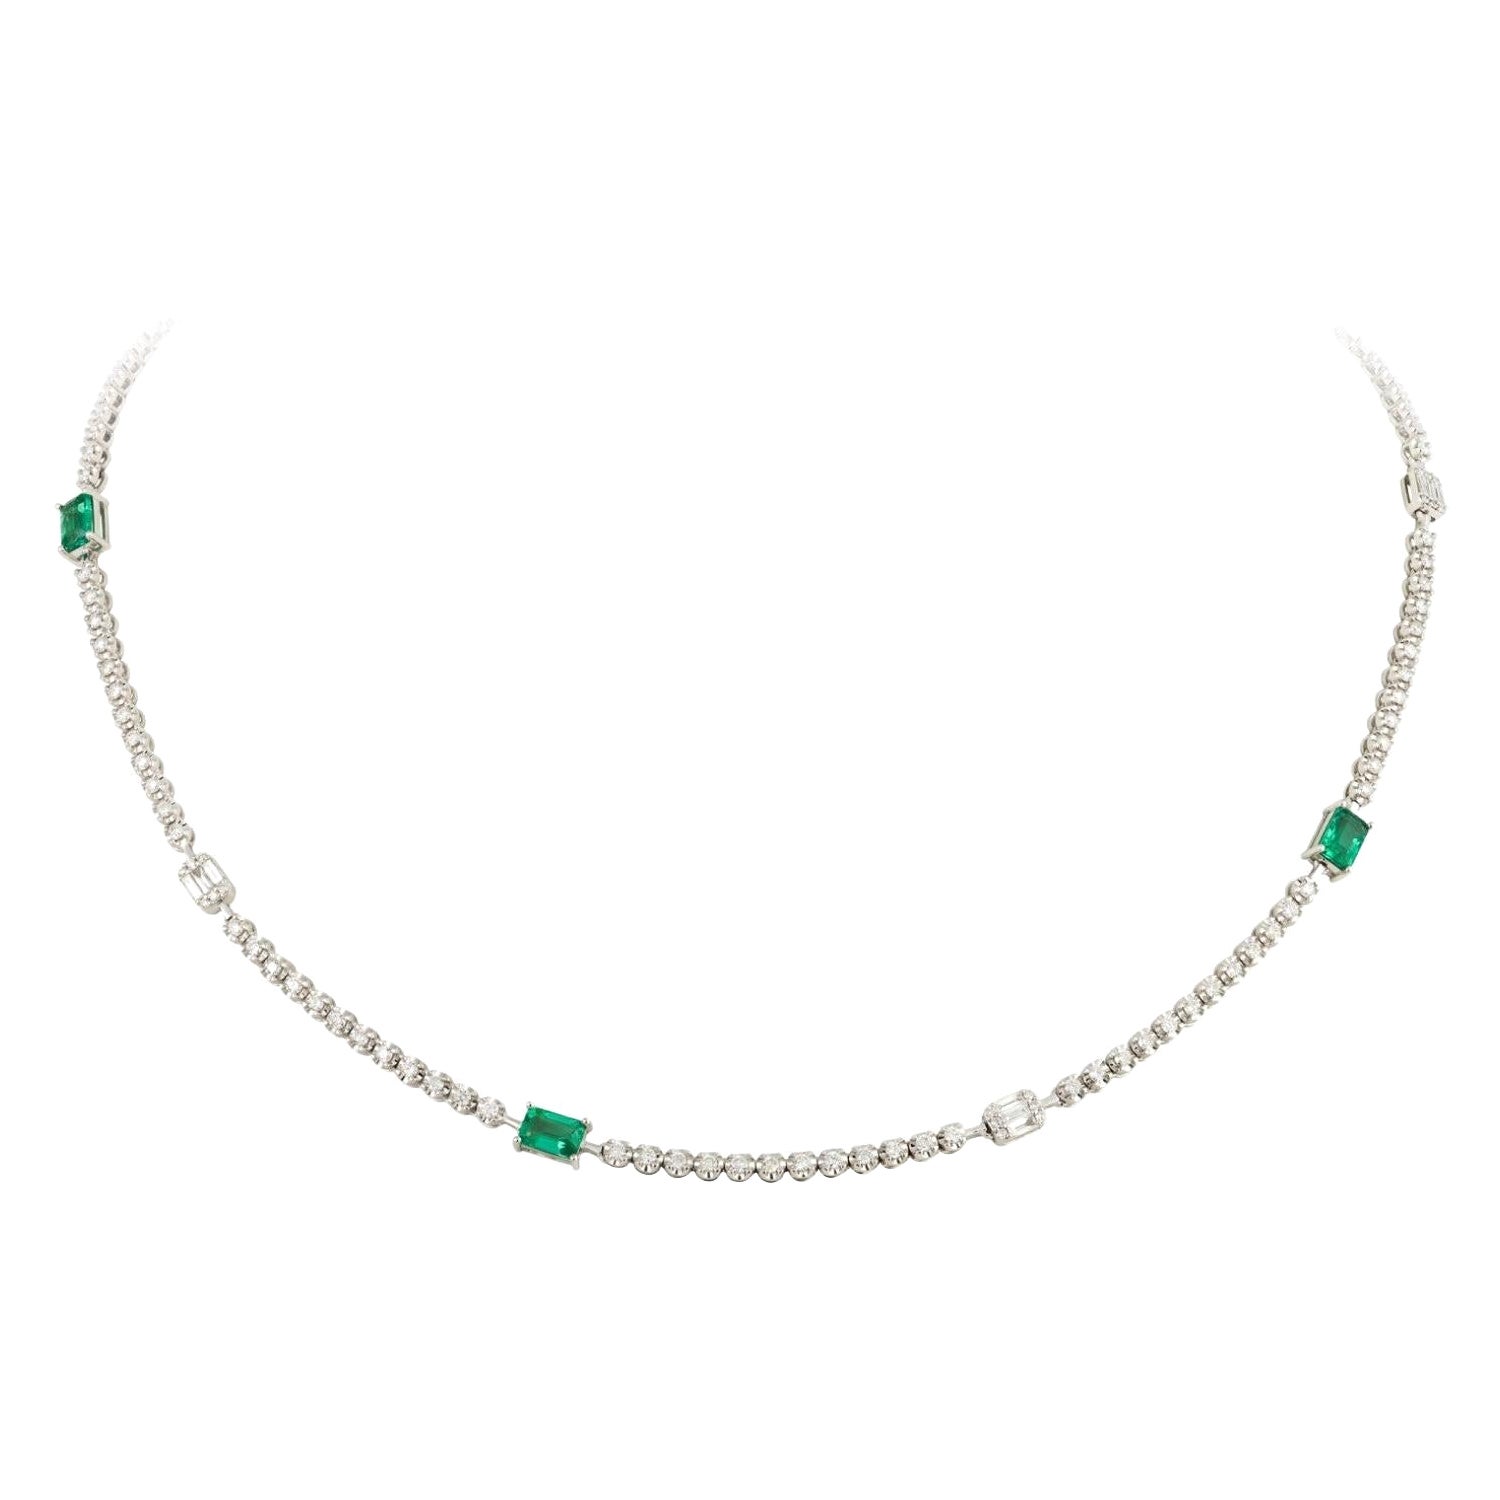 Seltene, prchtige 18KT Gold-Halskette mit Baguette-Diamant und Smaragd, neu mit Etikett